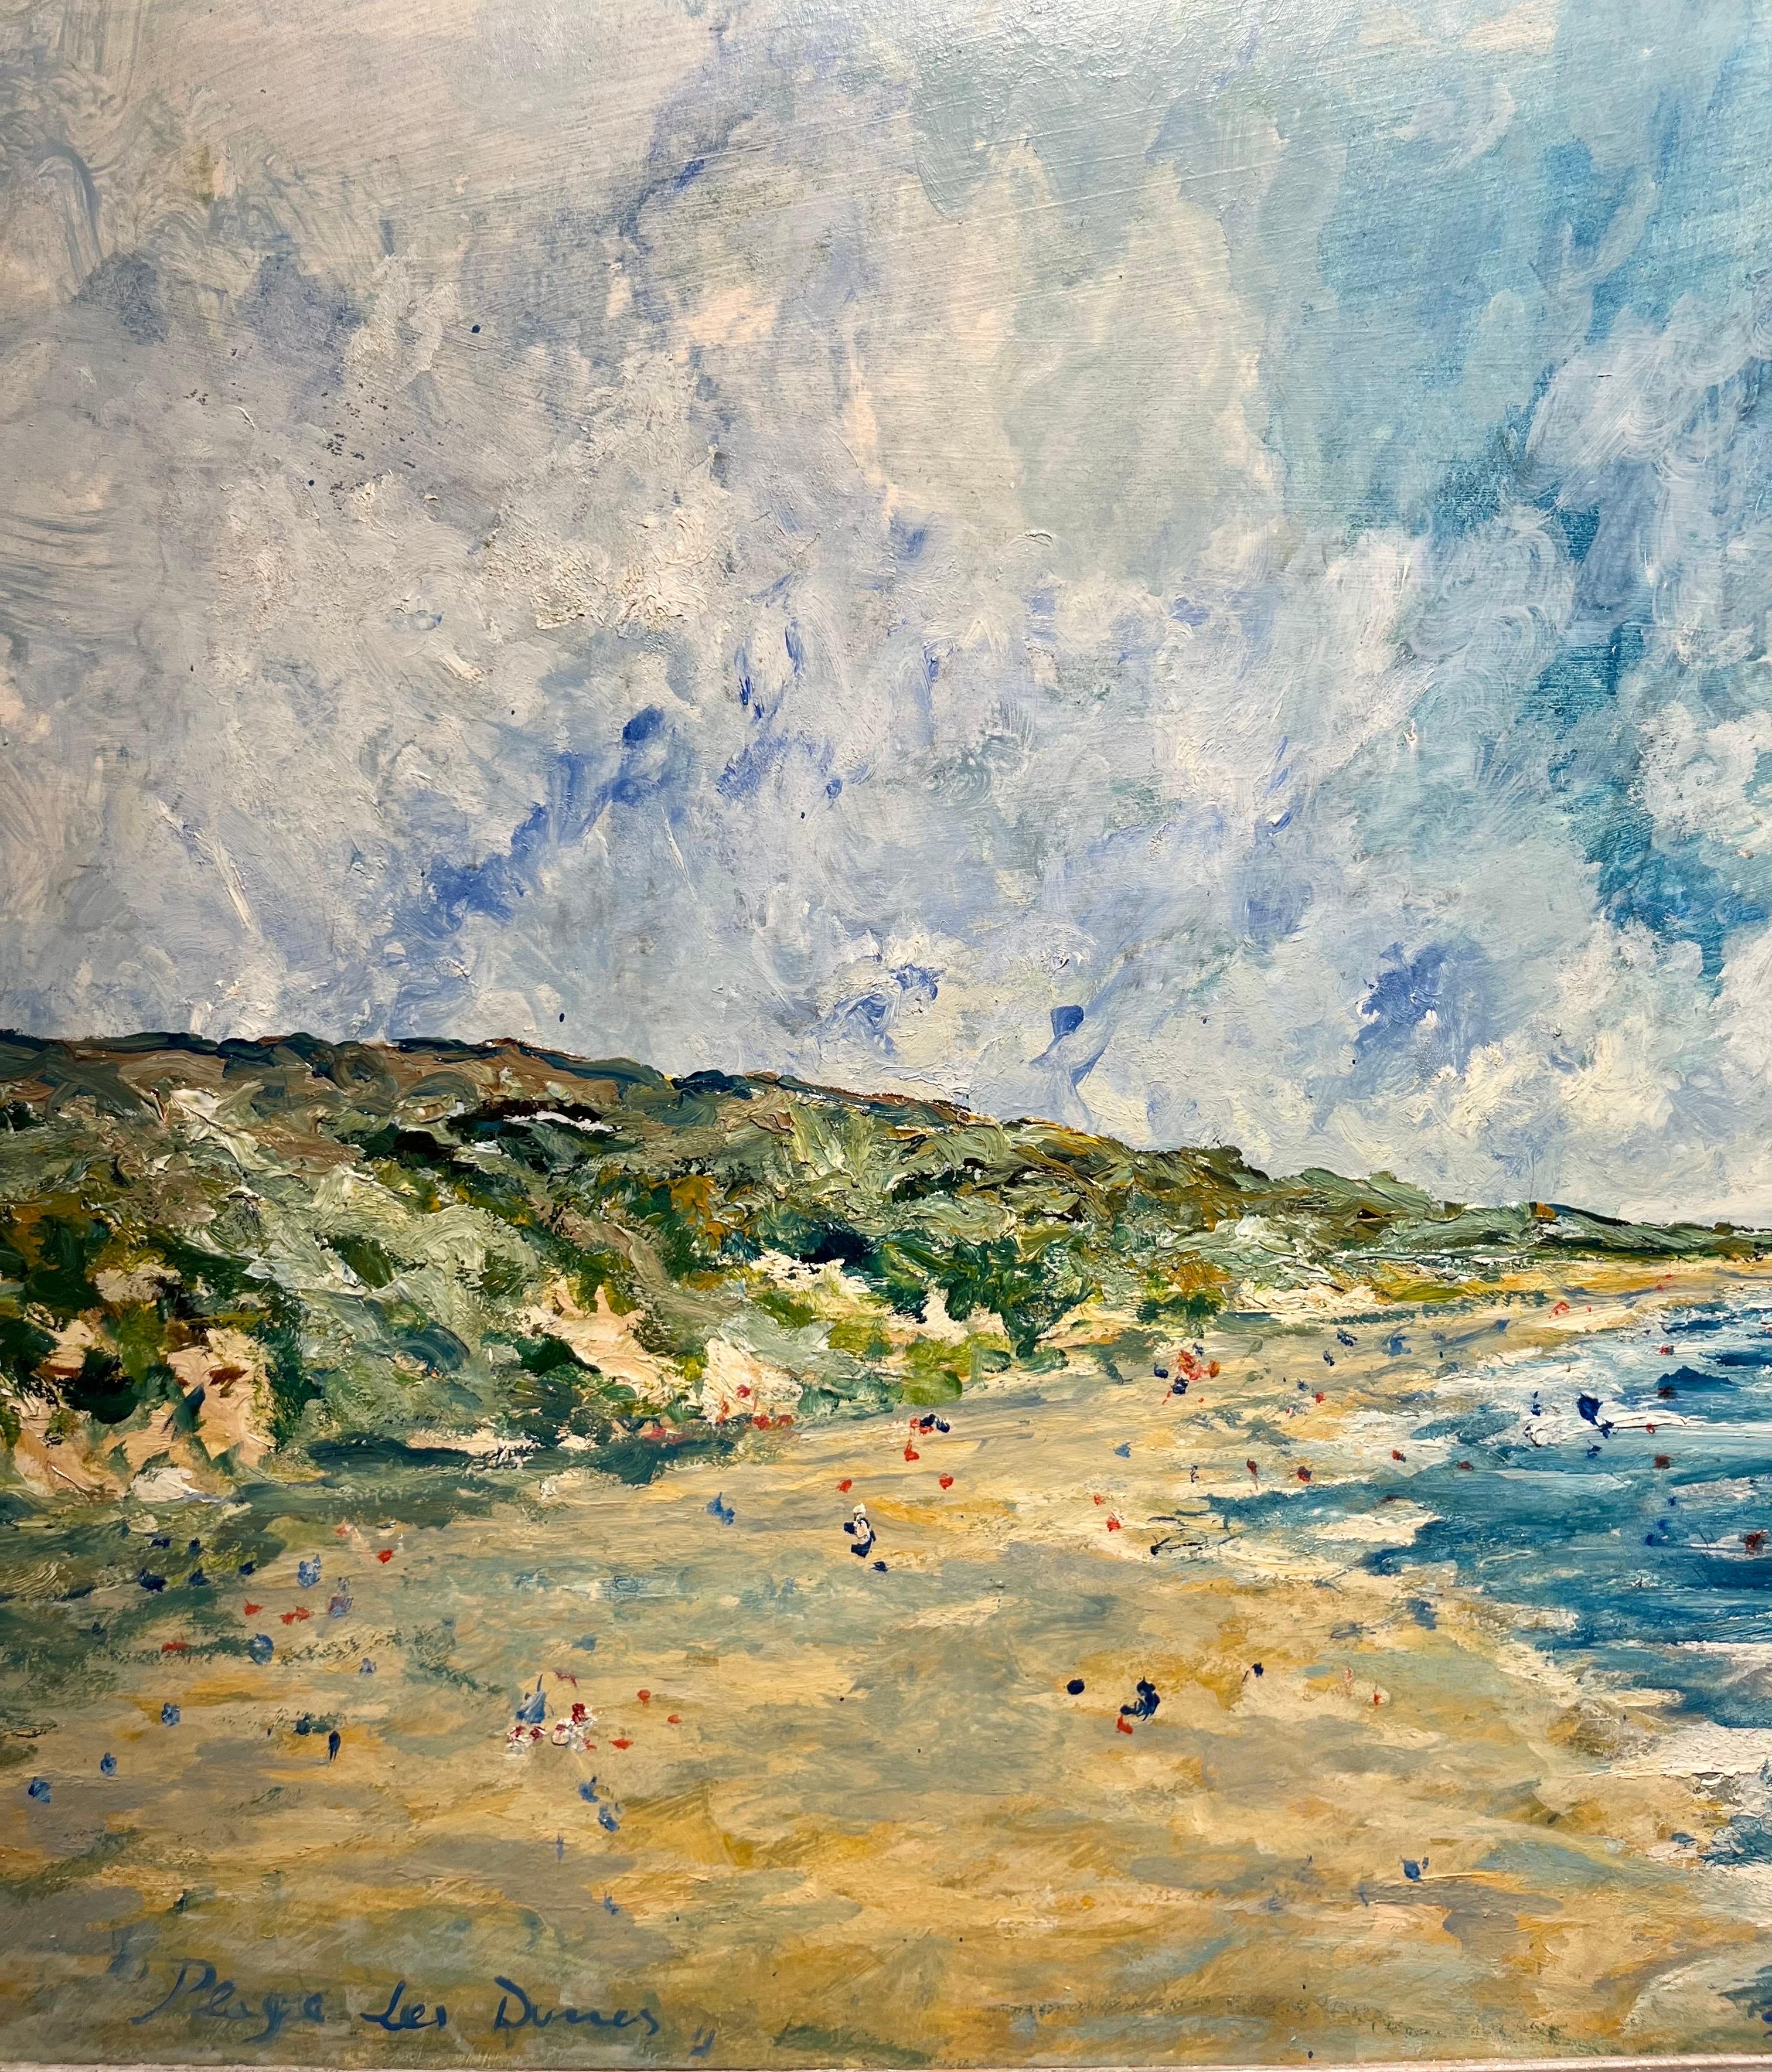 Paesaggio di una spiaggia della Francia del Nord
Spiaggia
Ciel tempétueux
Luce estiva
Bleu
Jument